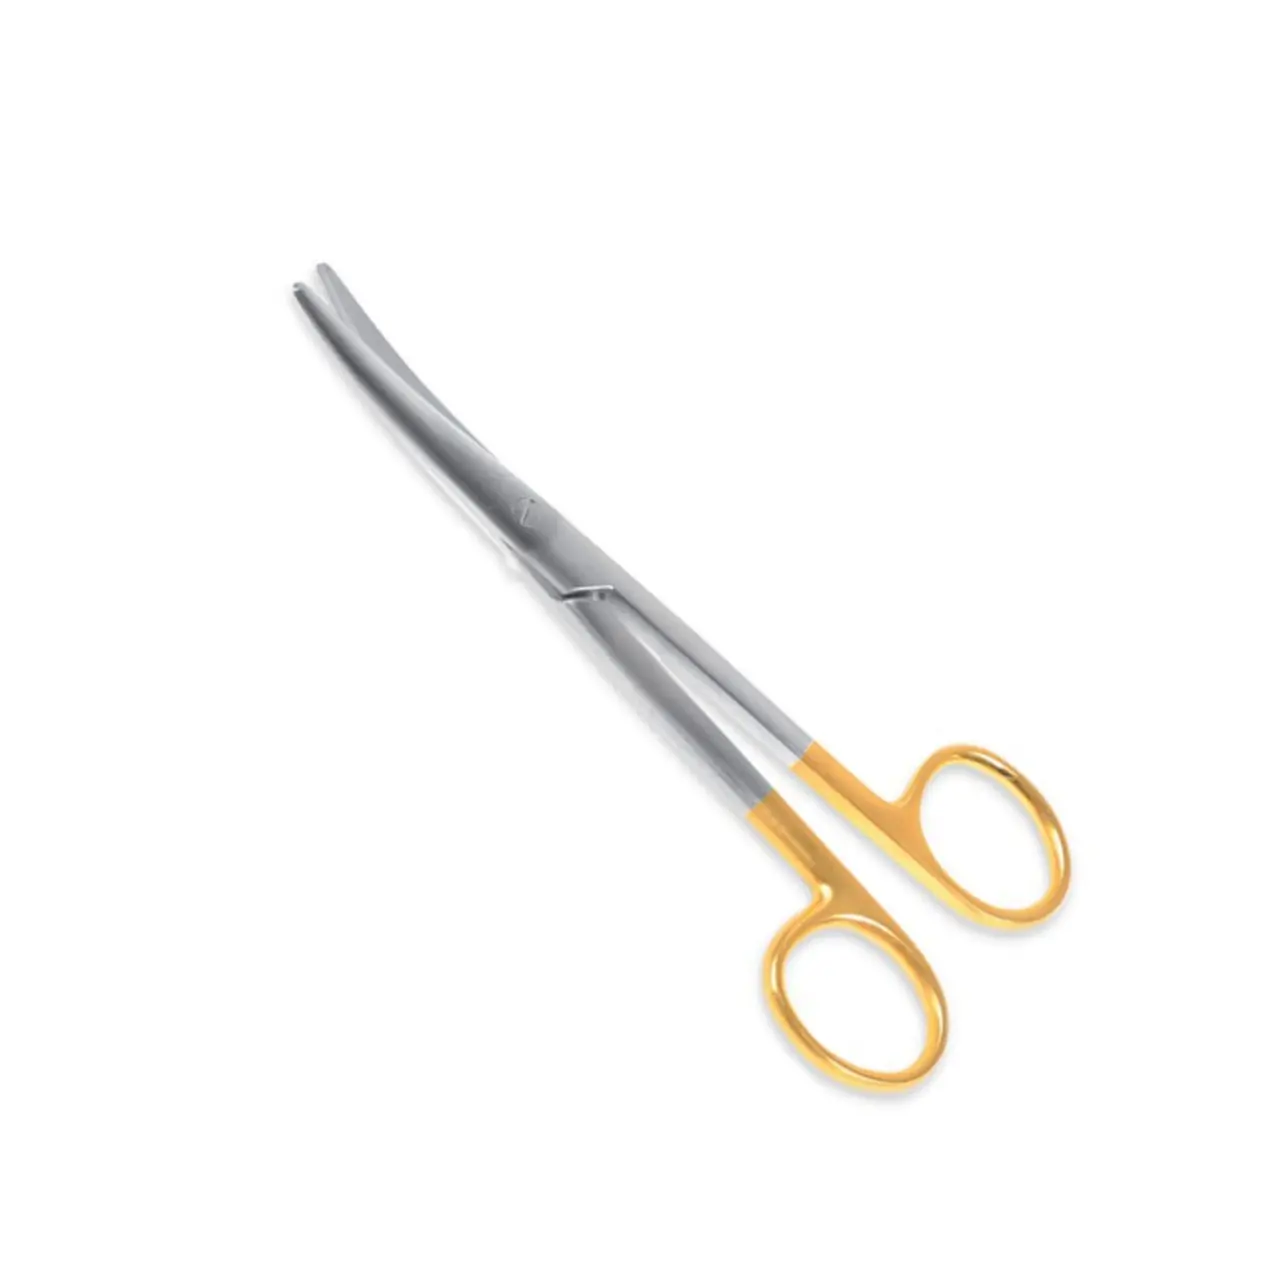 Mayo otopsi makası yüksek kalite paslanmaz çelik cerrahi ve tıbbi cihazlar düz ve kavisli bıçaklı kesme makası